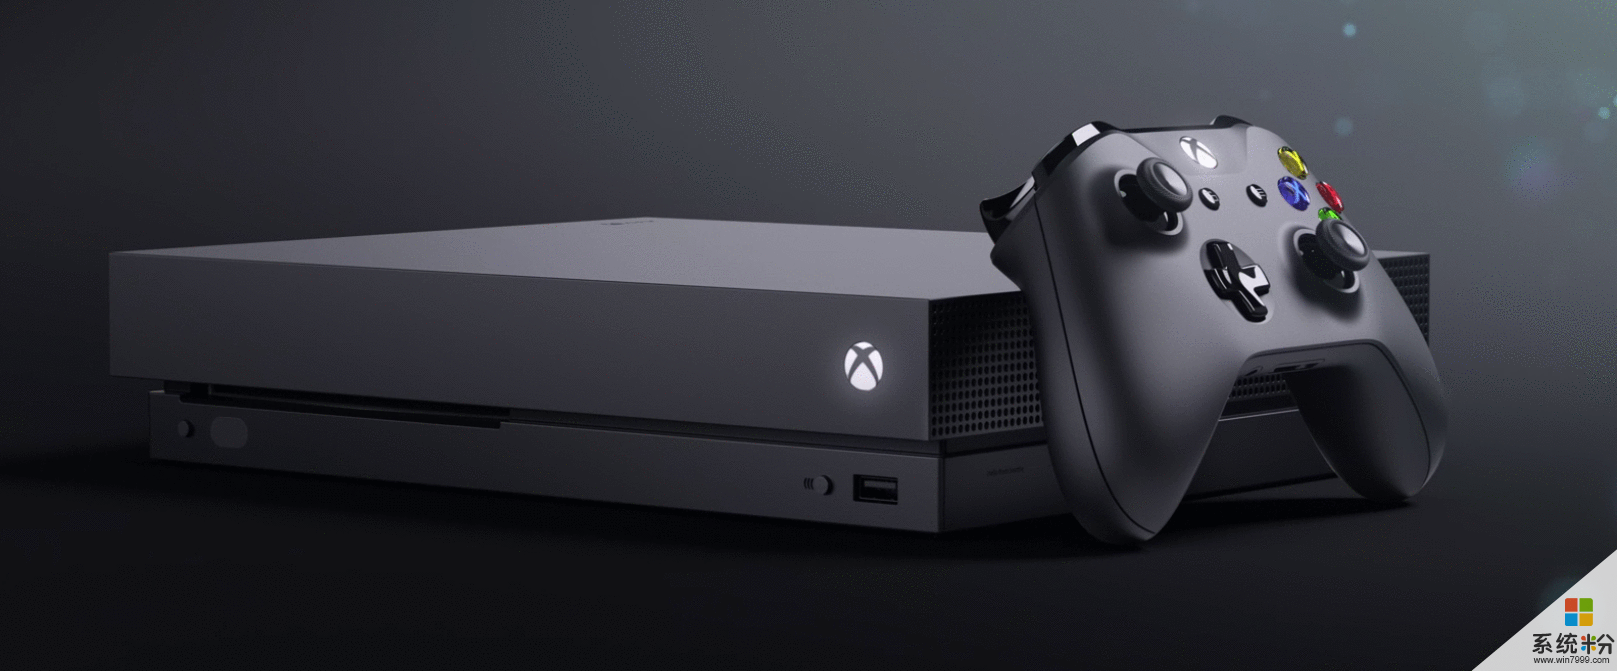 微軟正式發布新一代遊戲主機Xbox One X(2)